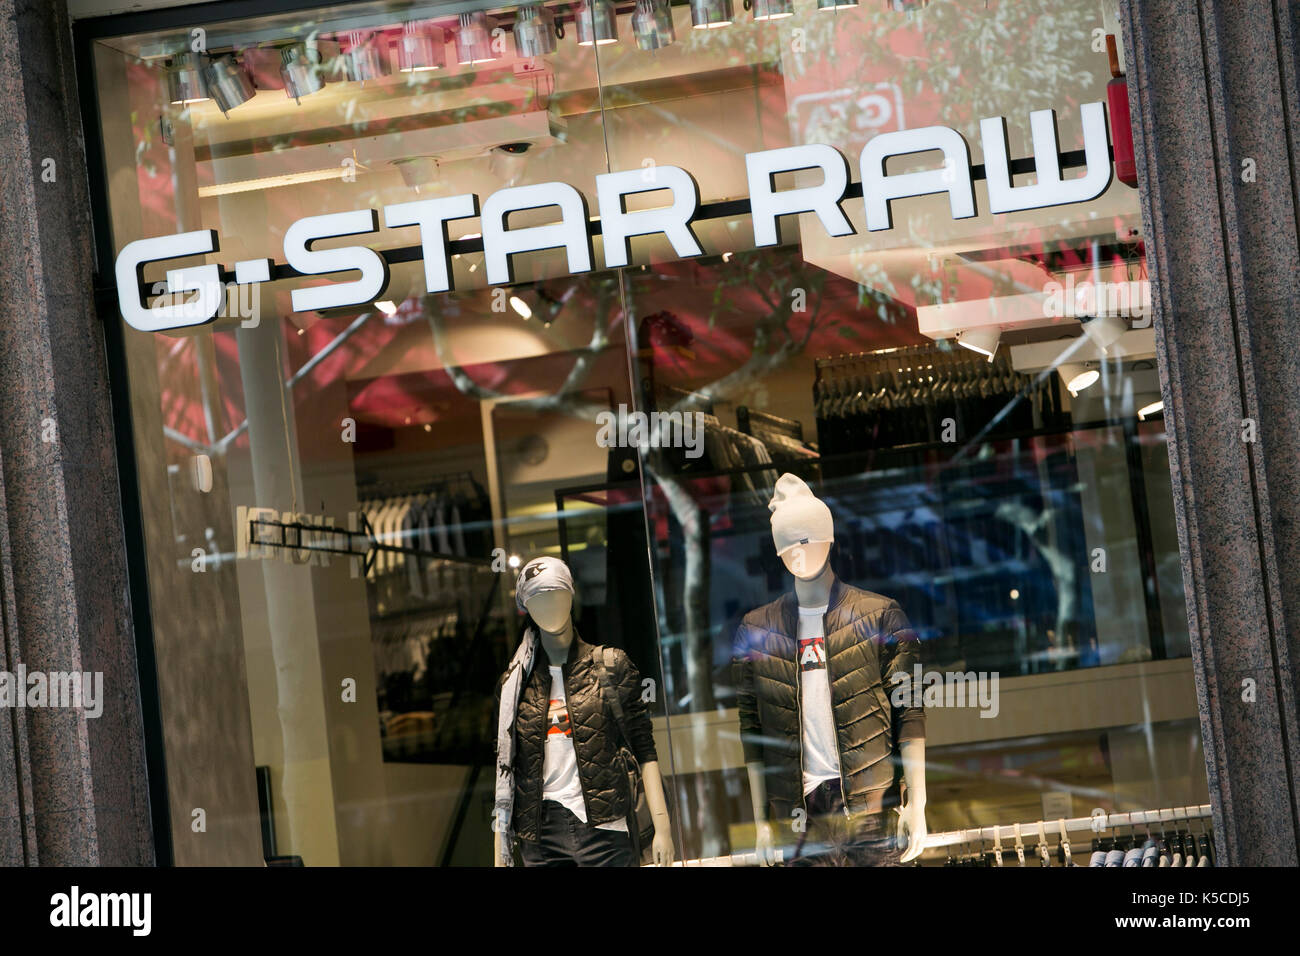 G Star Outlet Flash Sales, 52% OFF | centrodavinci.es